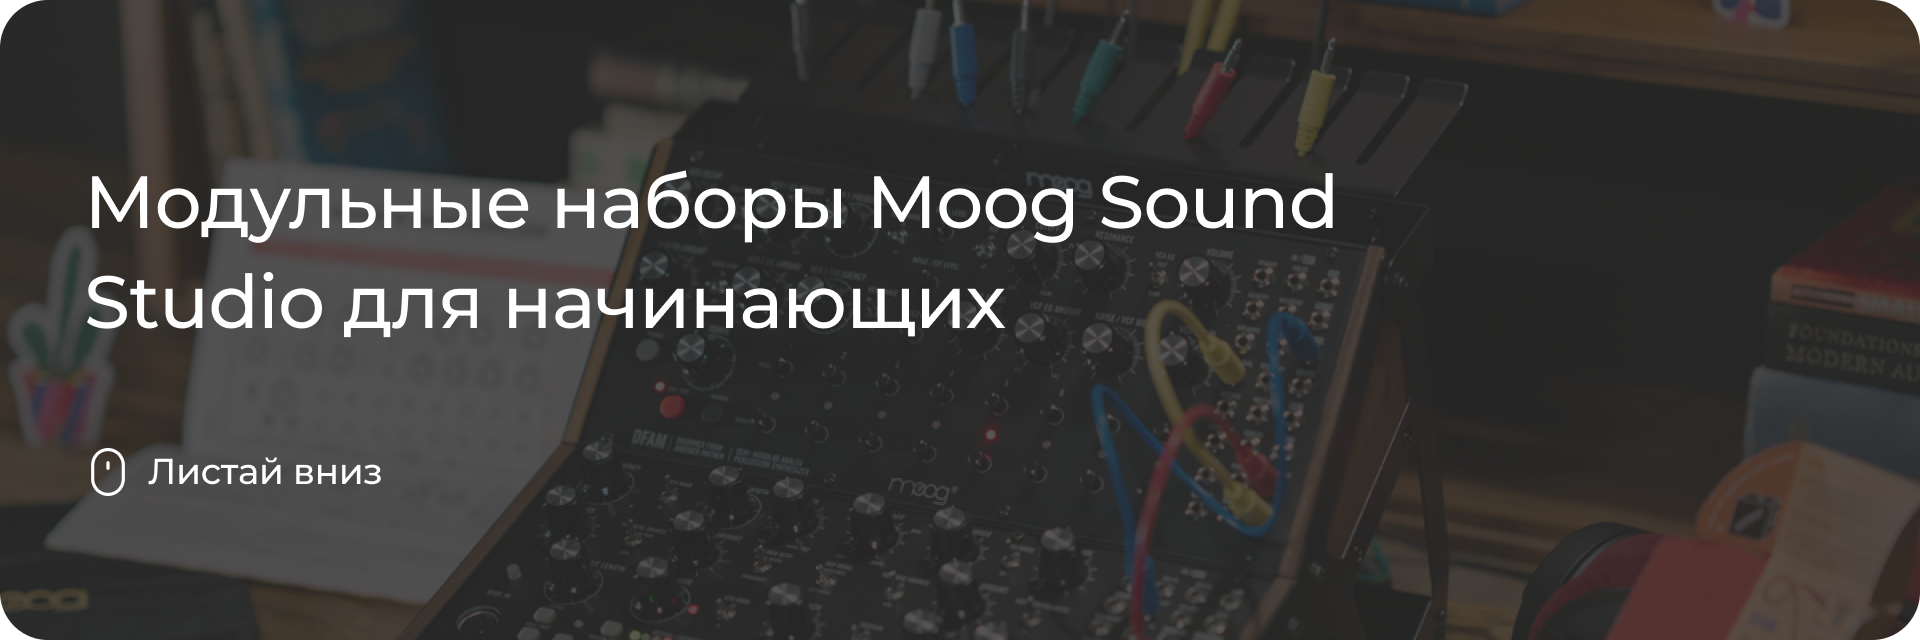 Модульные наборы Moog Sound Studio